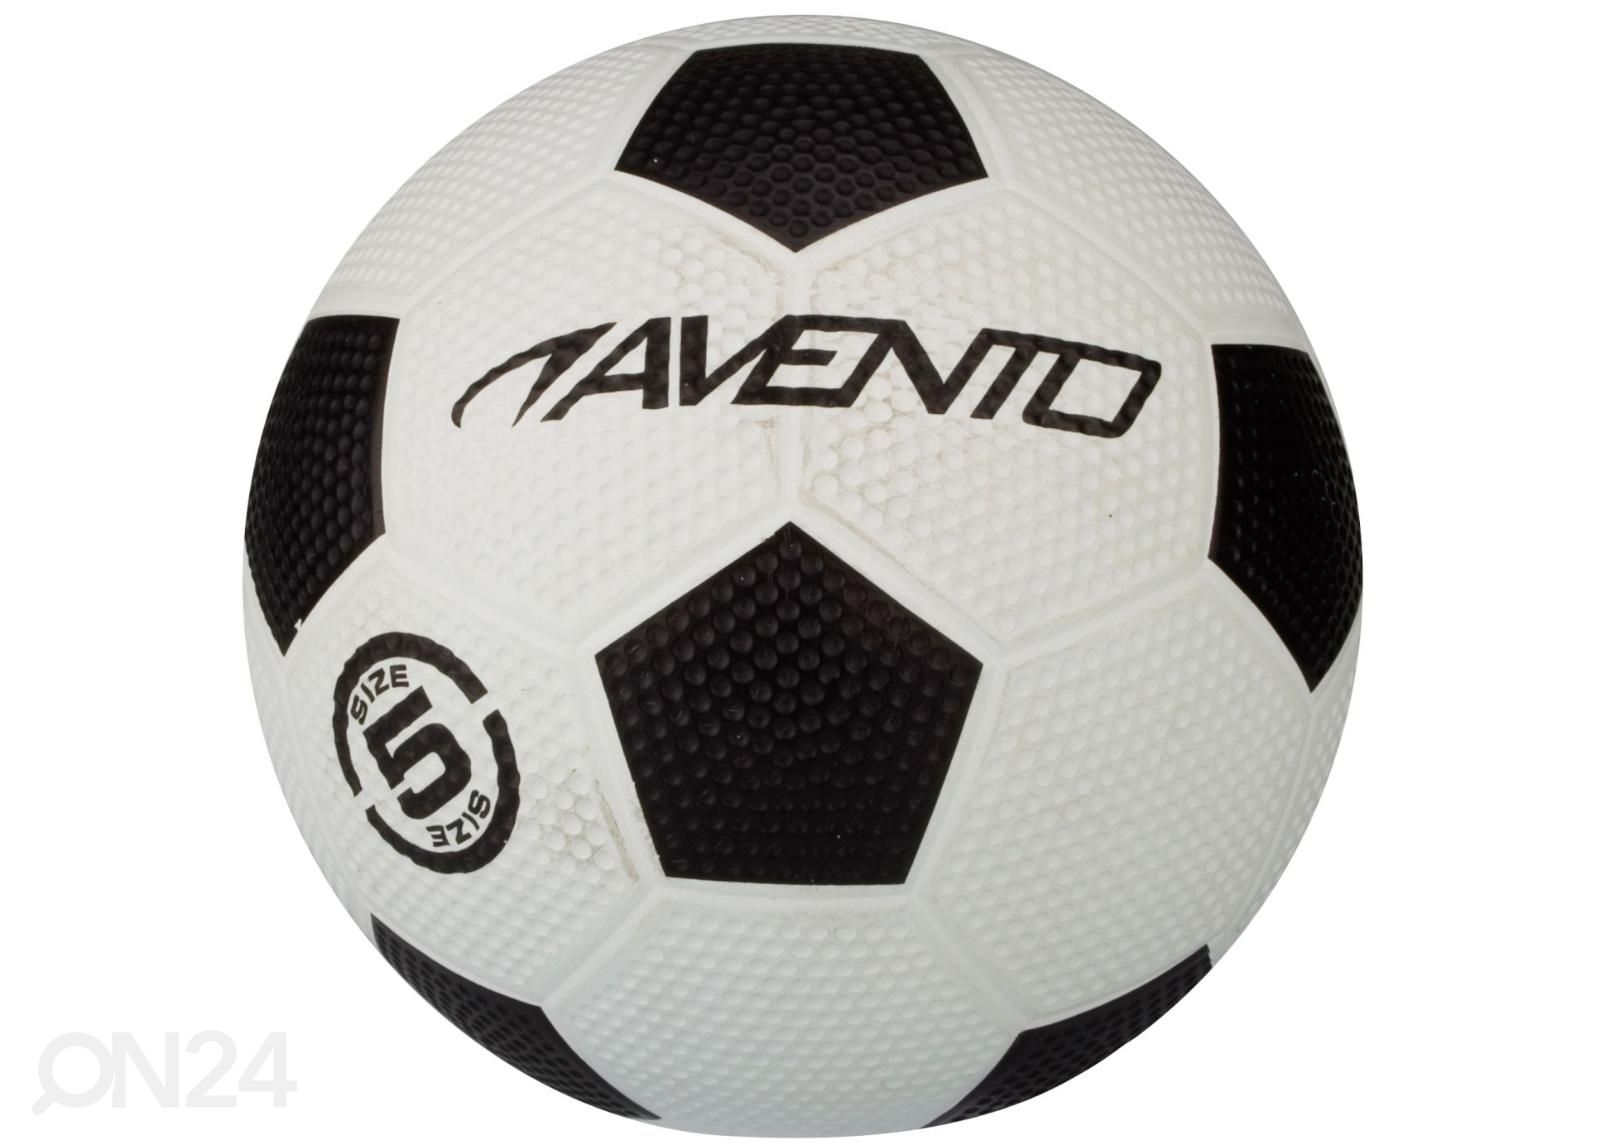 Klassikaline Jalgpall El Classico Avento suurendatud